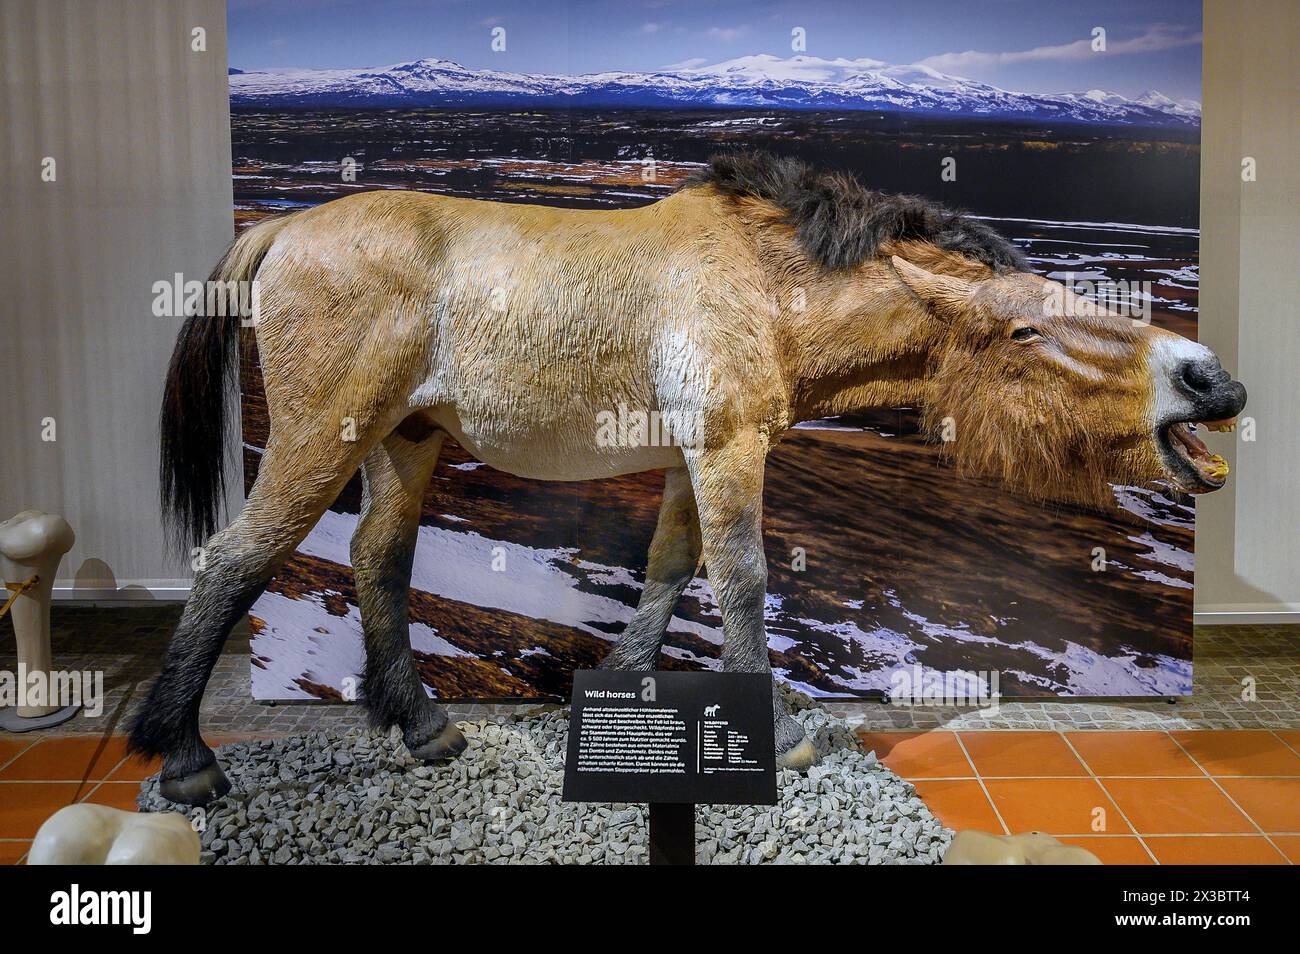 Cheval sauvage de l'âge de glace, exposition Safari de l'âge de glace Allgaeu dans le Marstall, Kempten, Allgaeu. Bavière, Allemagne Banque D'Images